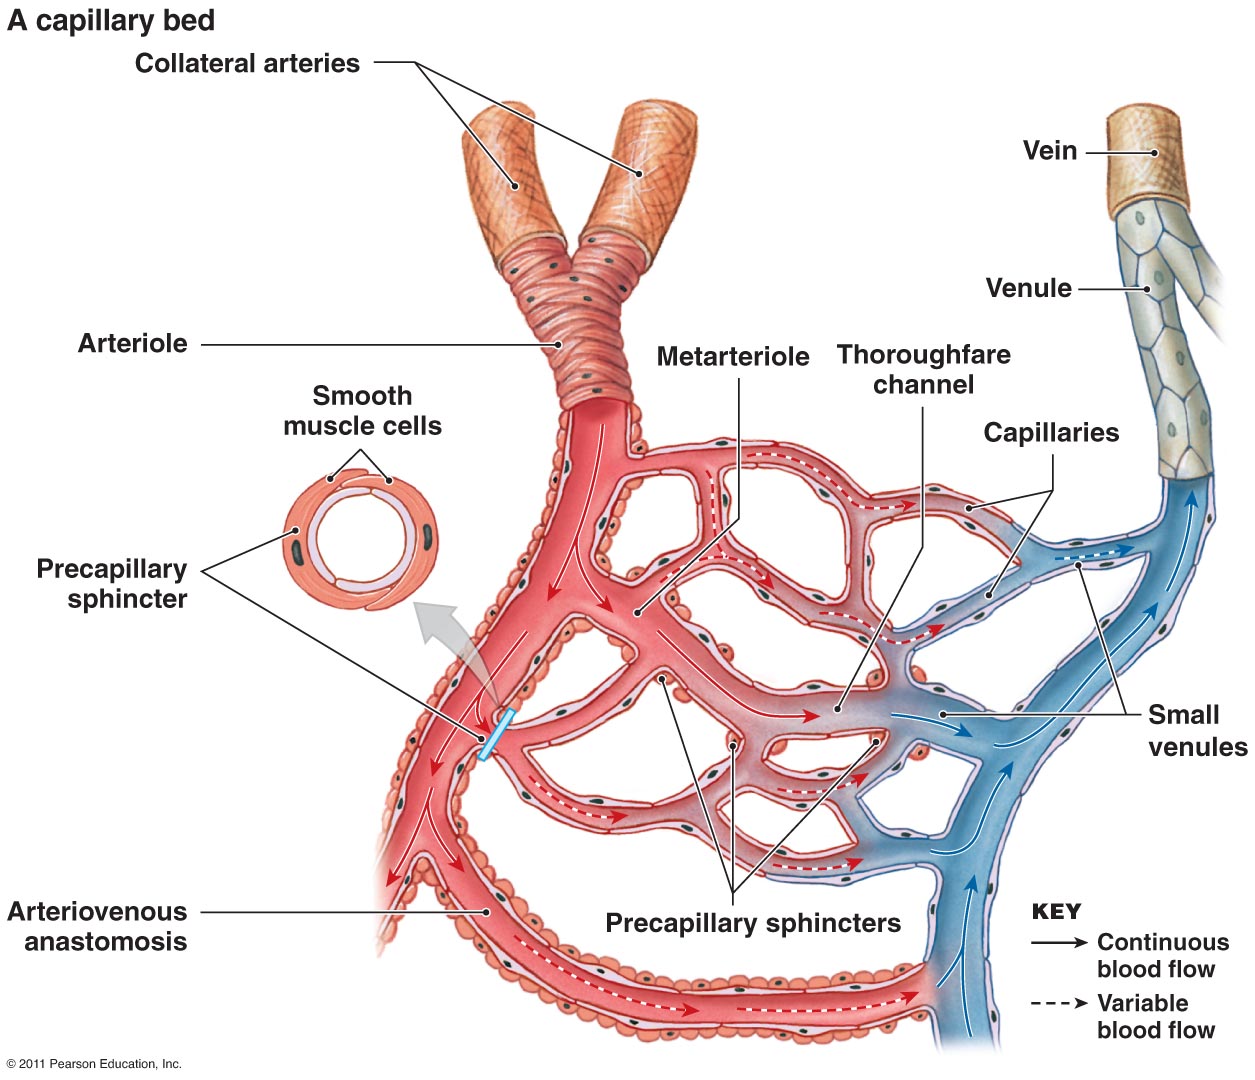 Где находится артерия и вены. Сосуды микроциркуляторного русла схема. Схема строения микроциркуляторного русла. Артерии и вены венулы и артериолы. Артерии артериолы капилляры венулы вены.